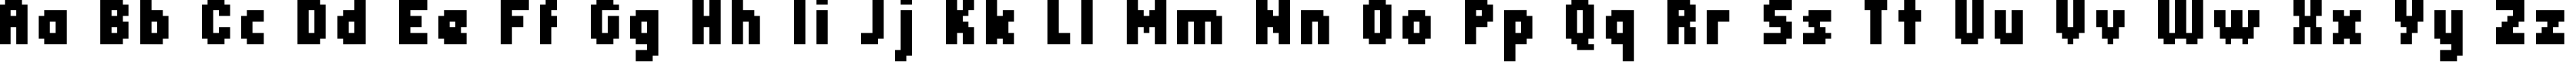 Пример написания английского алфавита шрифтом header 08_68